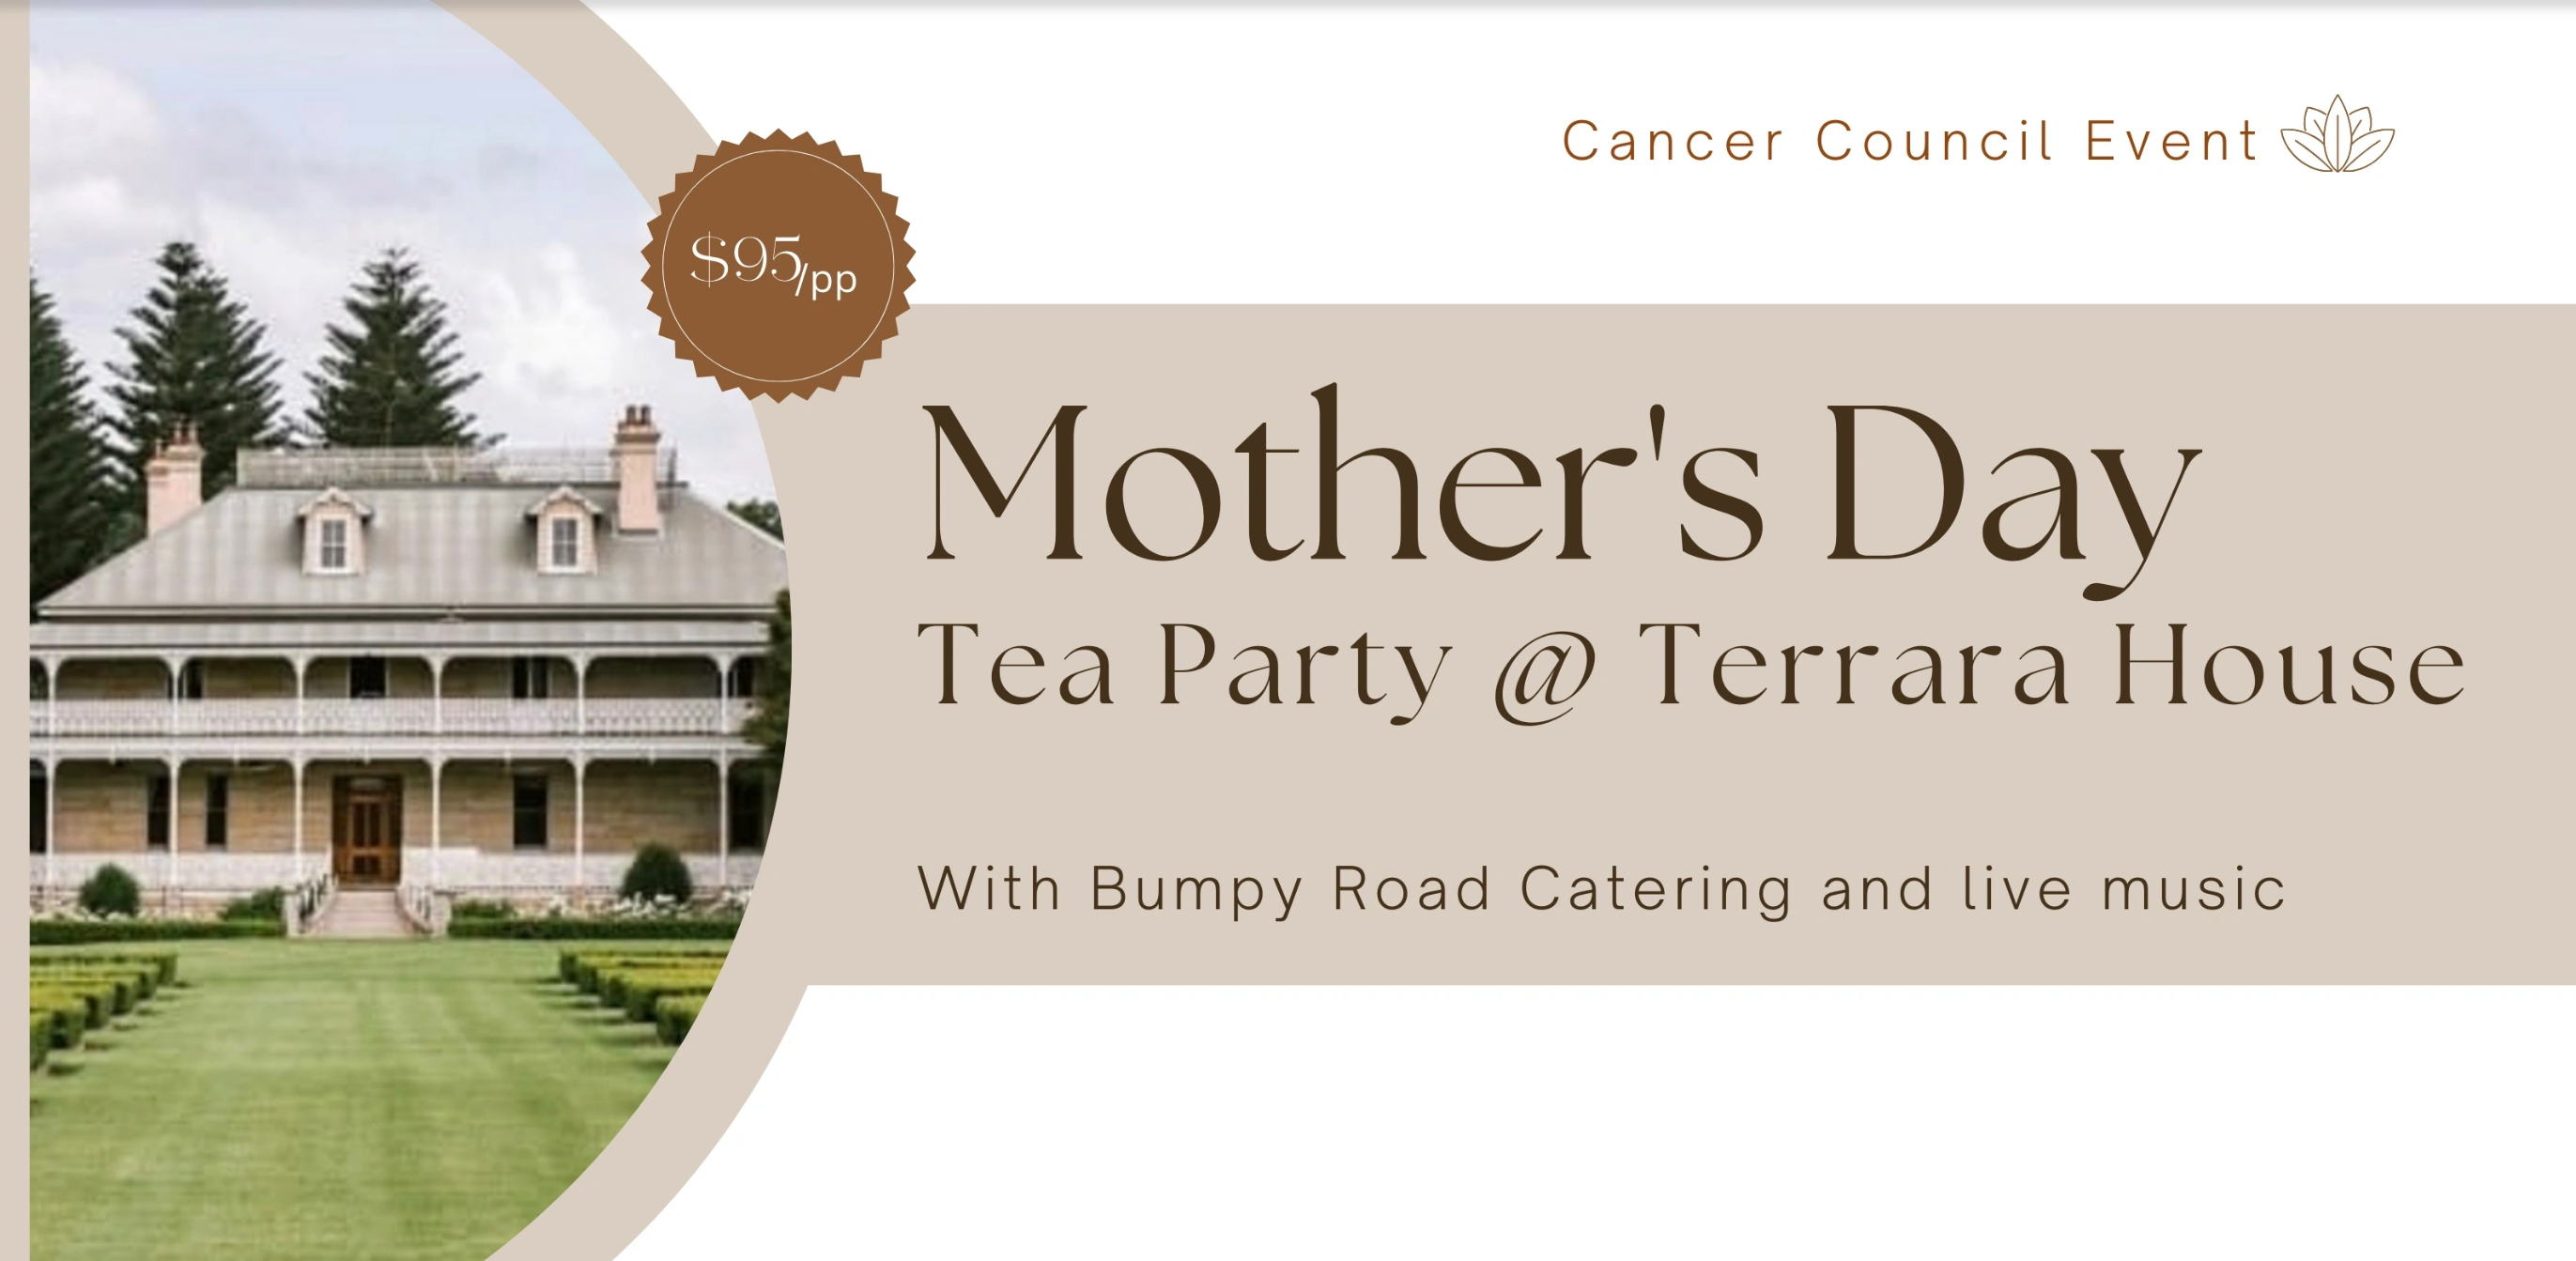 Mother’s Day Tea Party @ Terrara House